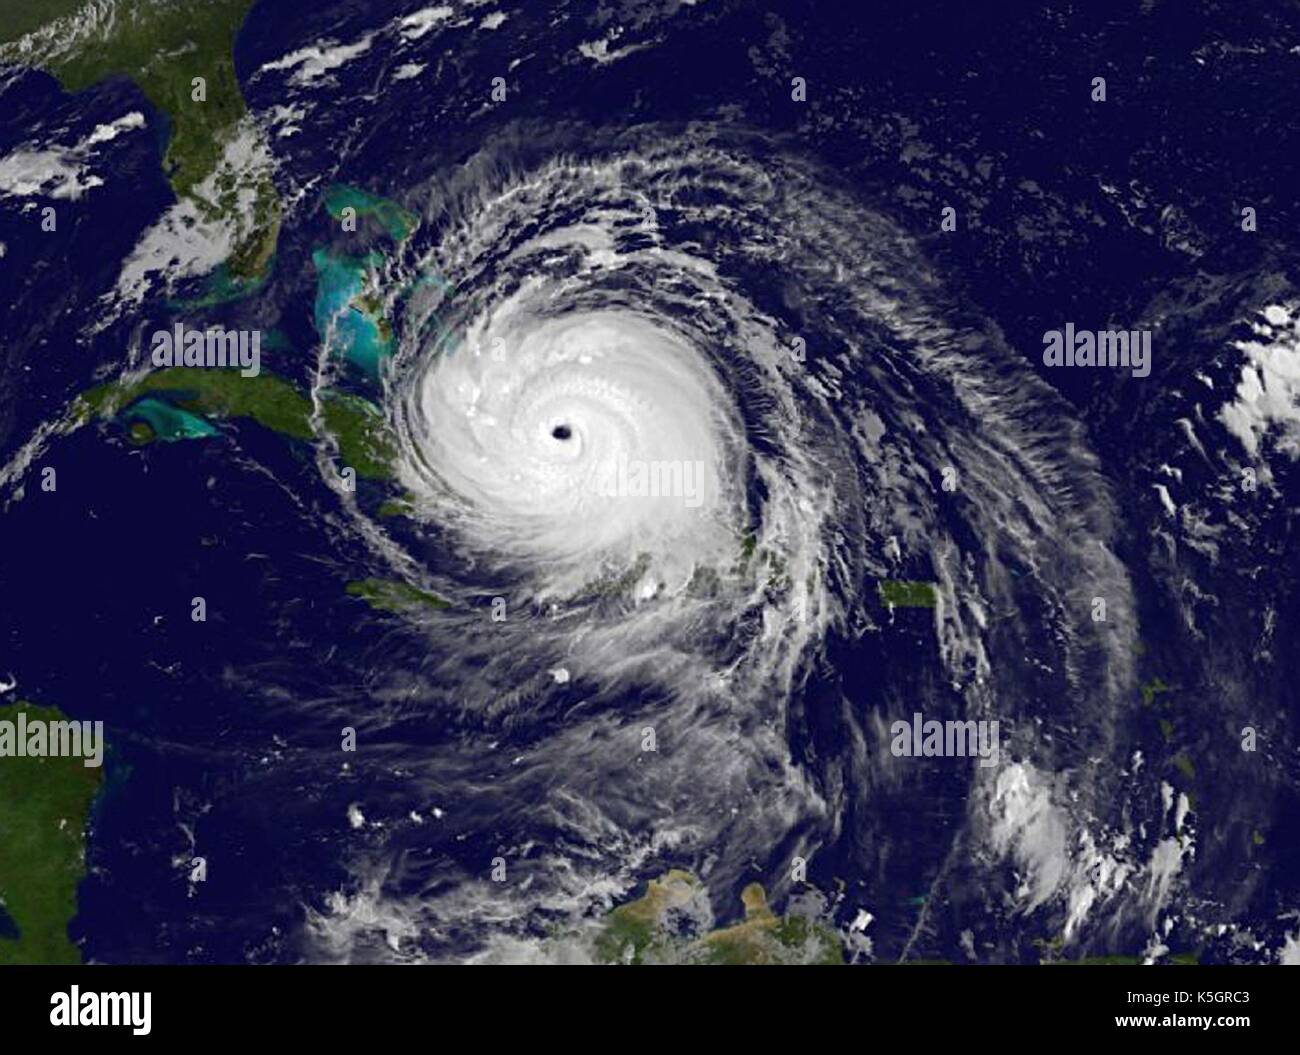 L'ouragan l'irma sur le sud de la France comme il se dirige vers le sud de la Floride comme une tempête de catégorie 5, comme illustré par le satellite GOES-16 septembre 8, 2017. Banque D'Images